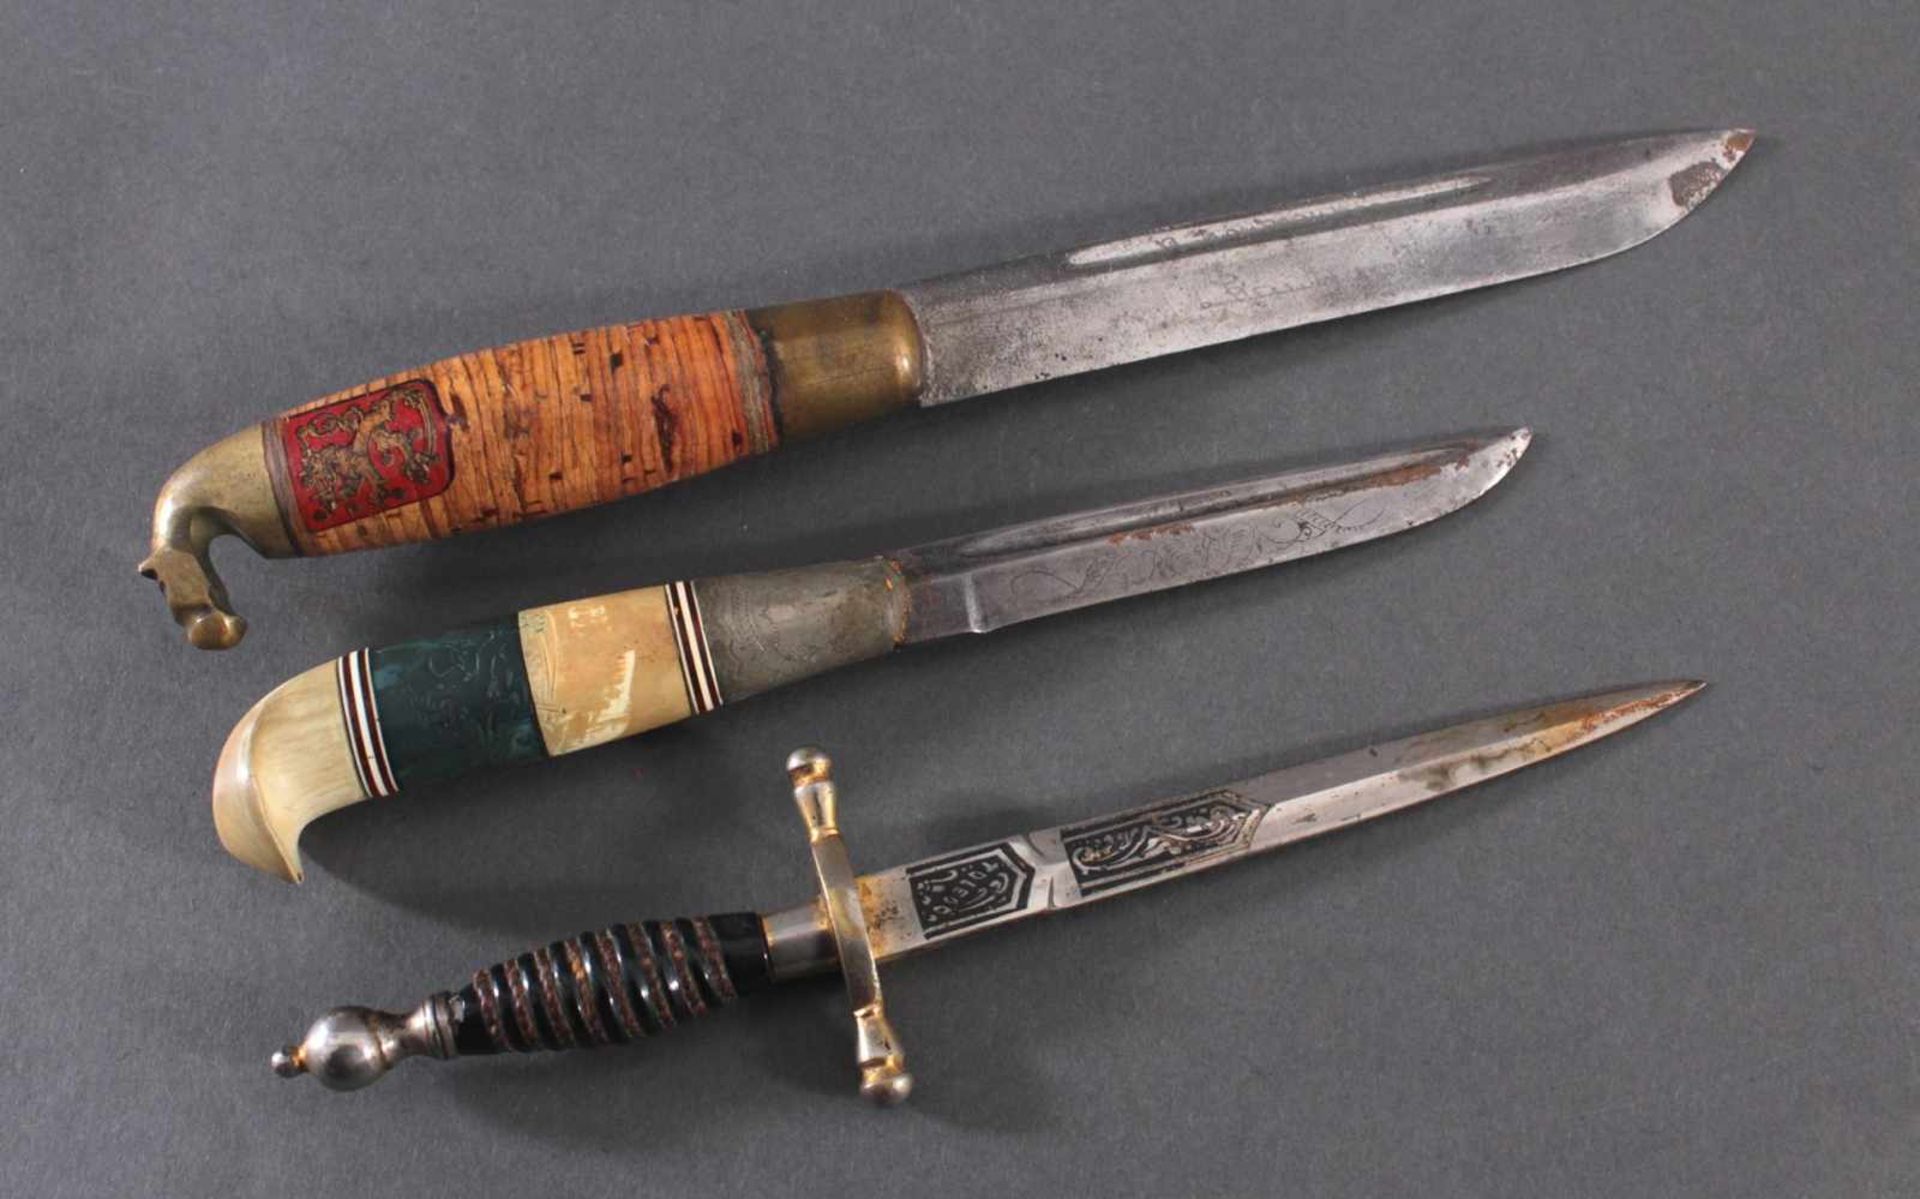 3 Messer2 Messer mit verzierter Klinge, Lederscheide mit Metallaplikationen, Griffe aus Bakelit, - Image 3 of 8